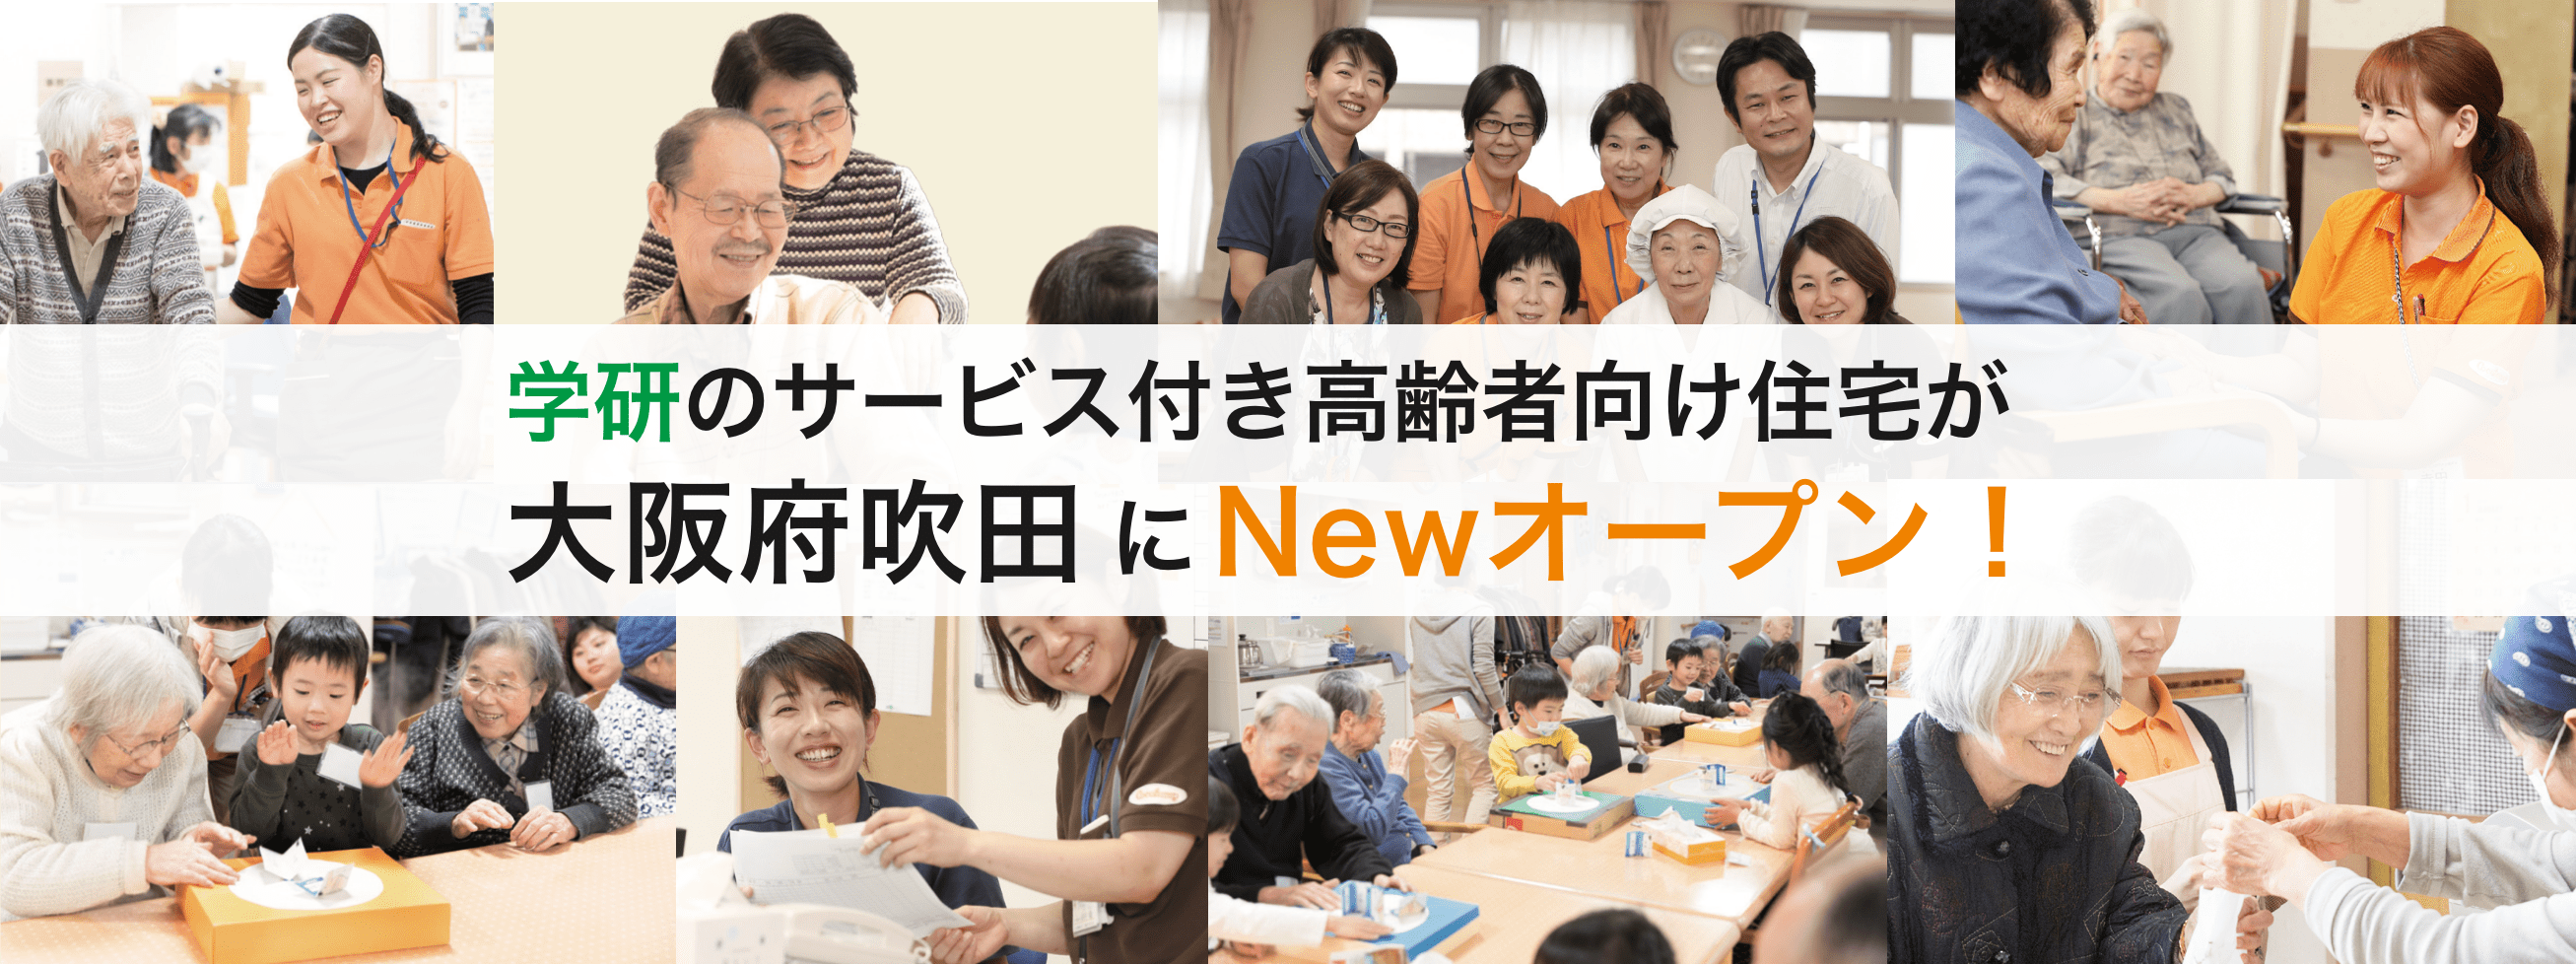 2021年 8月 静岡南八幡にNewオープン!!入居募集